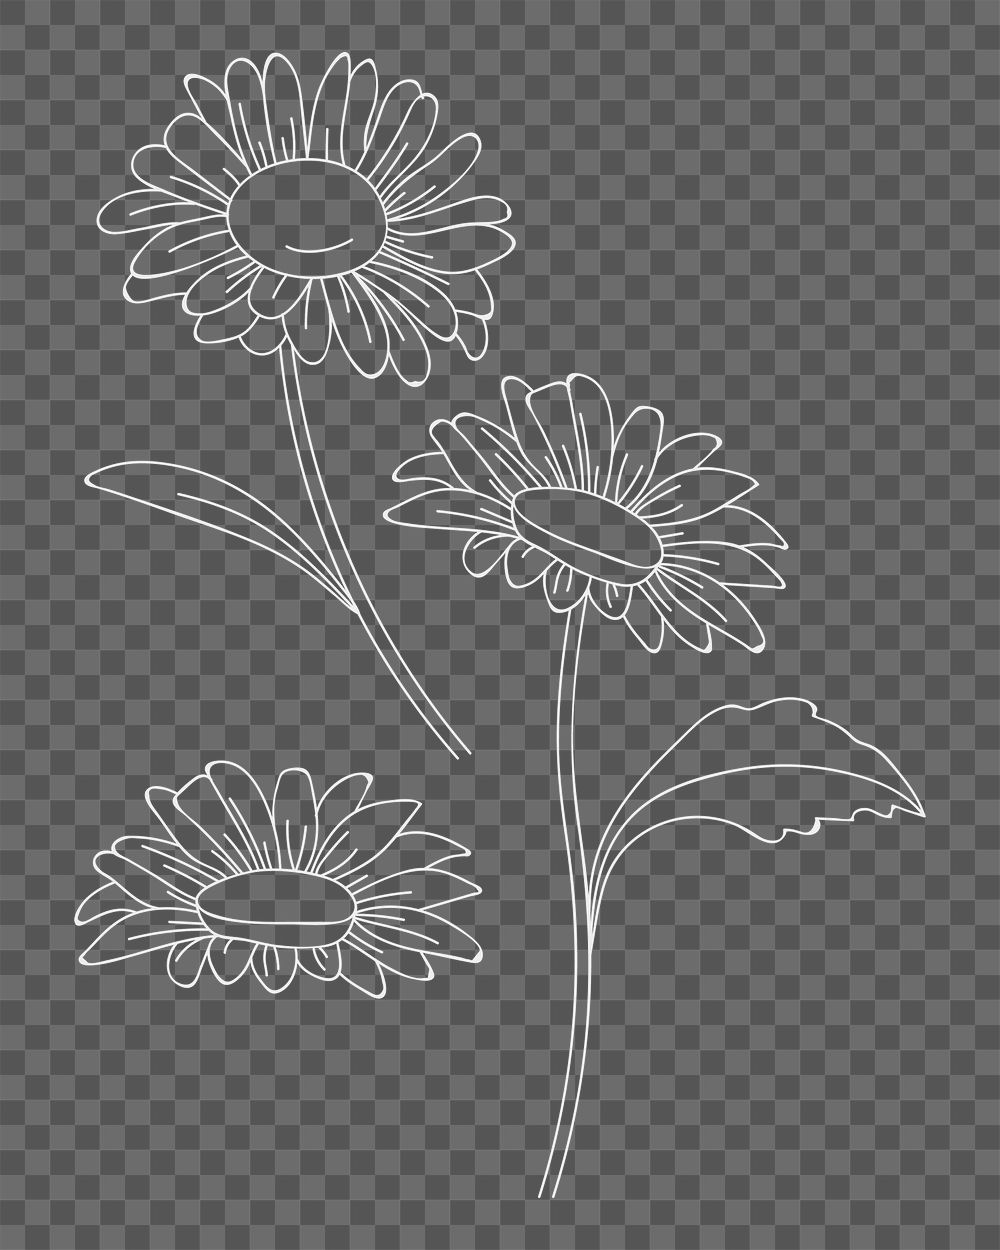 Flower element png, transparent background